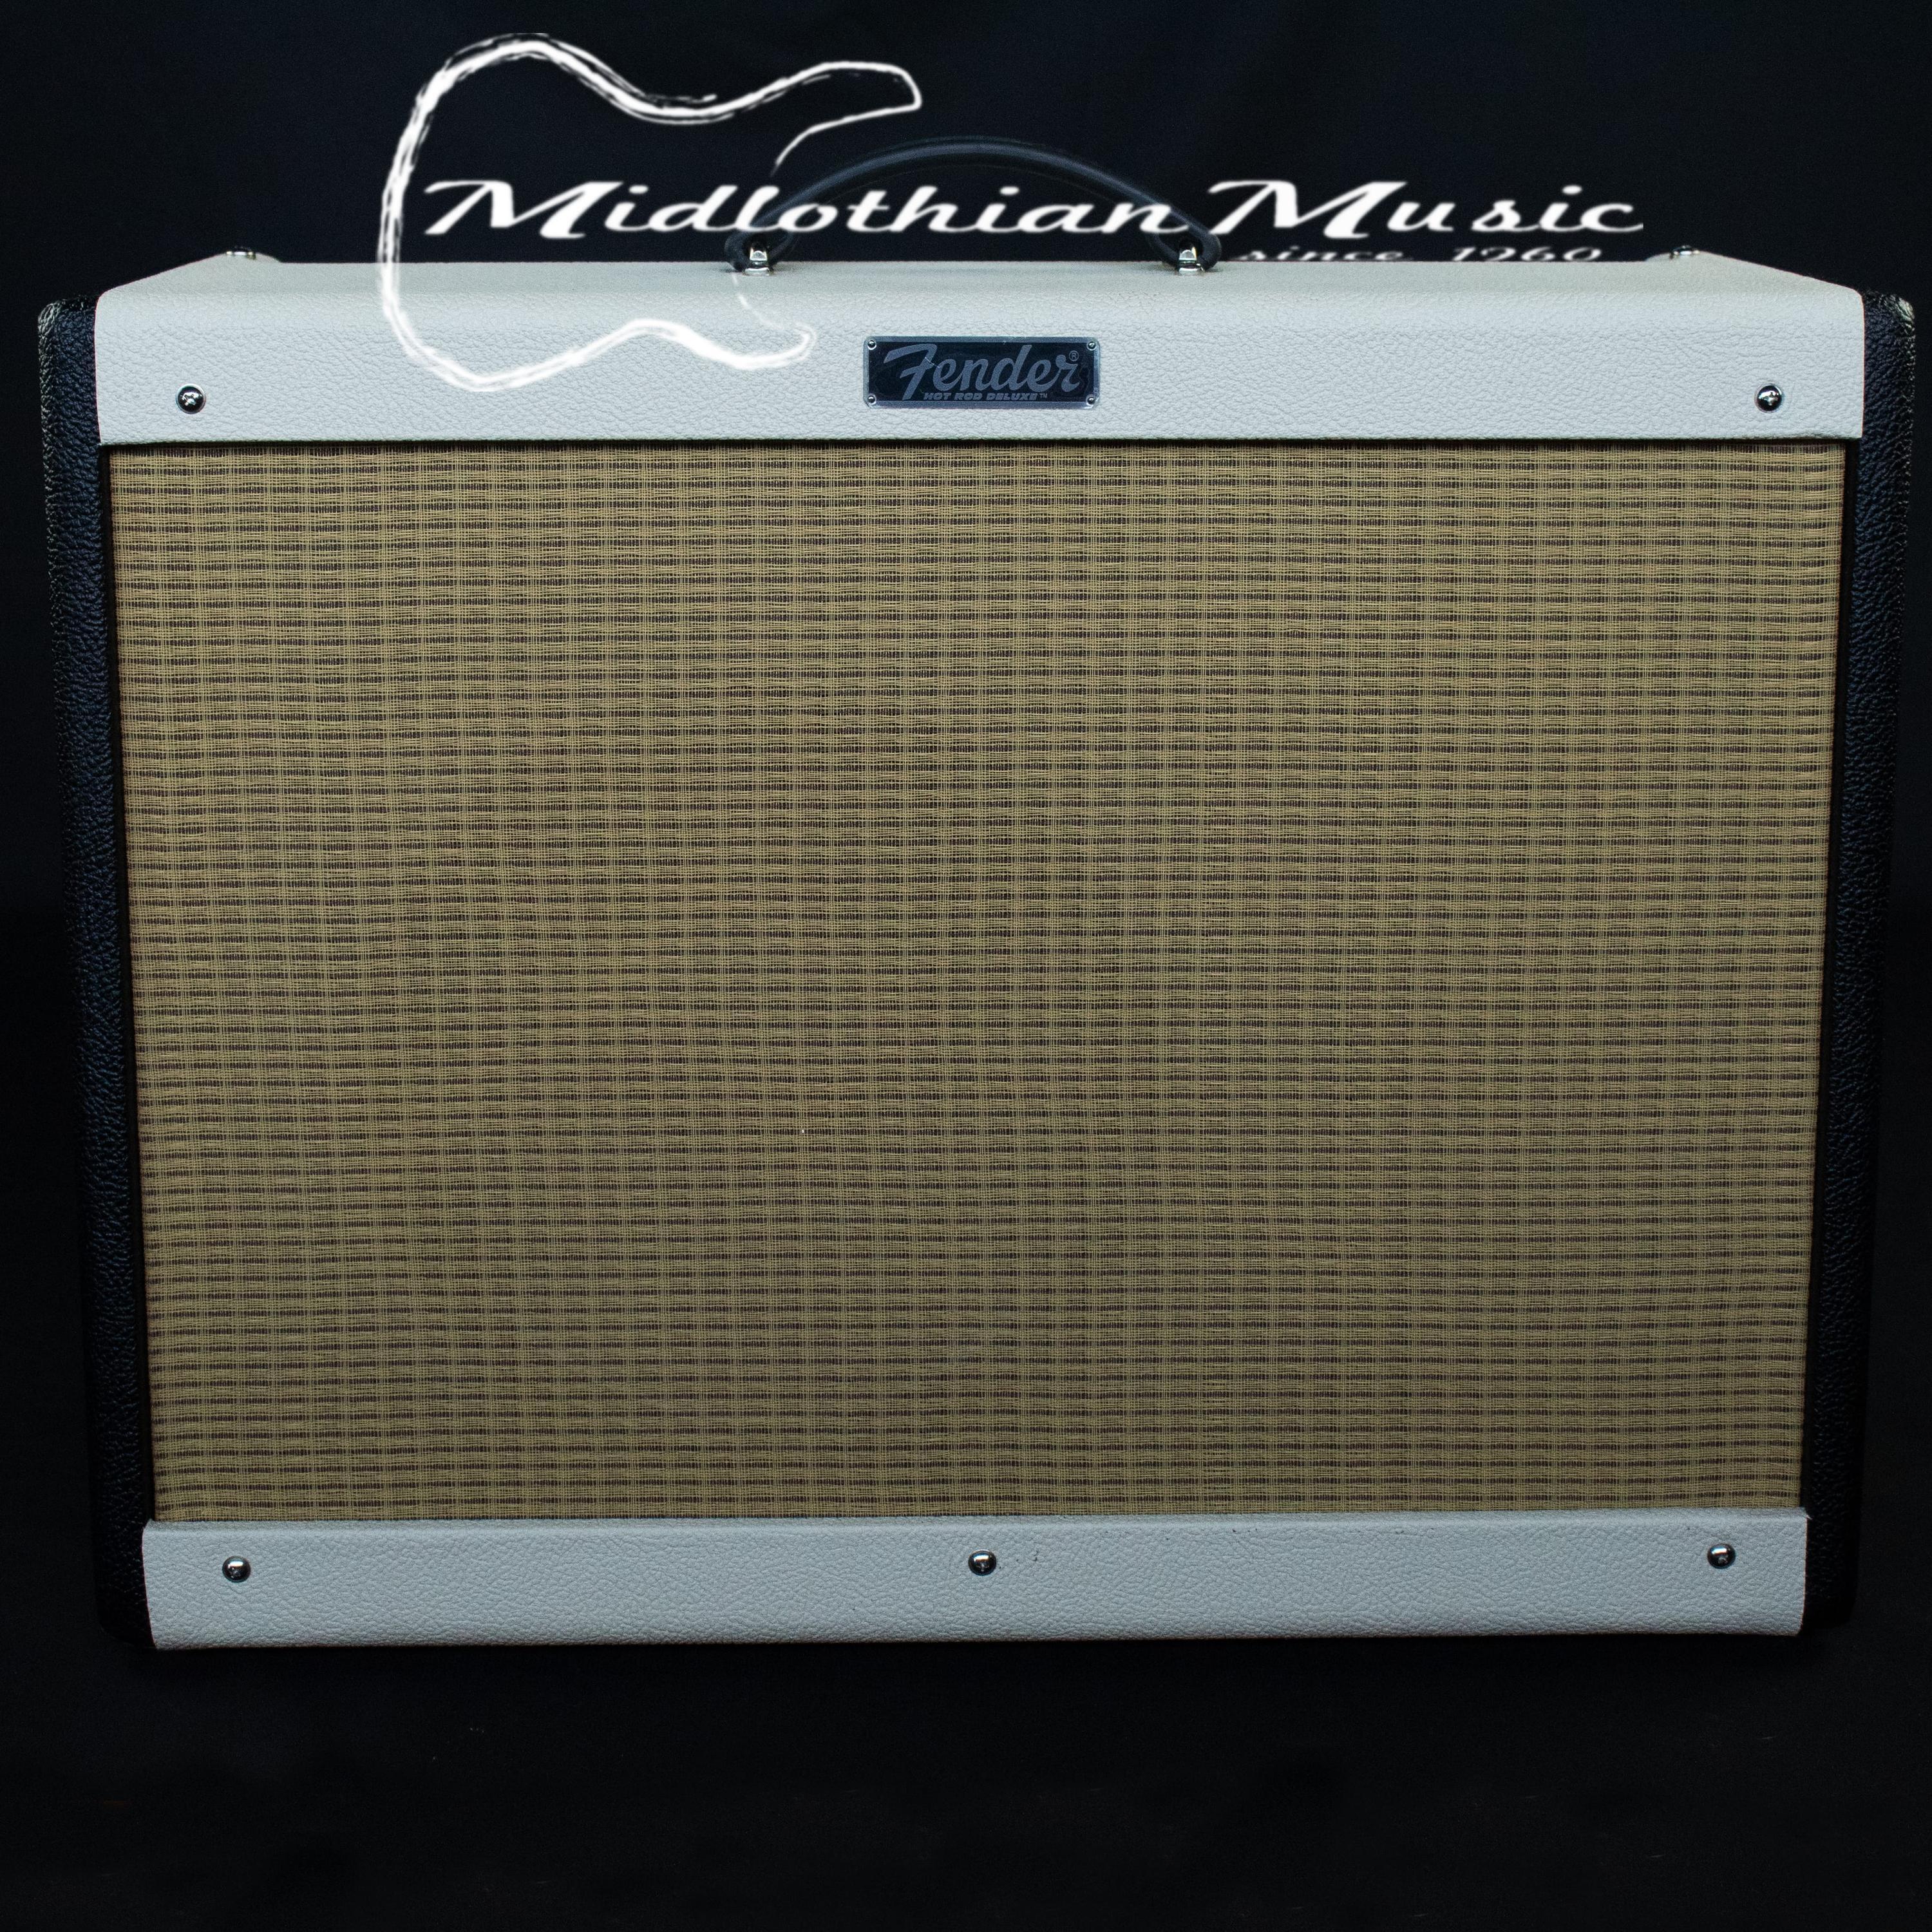 Used Fender Hotrod Deluxe lll Amplifier - 40W 1x12